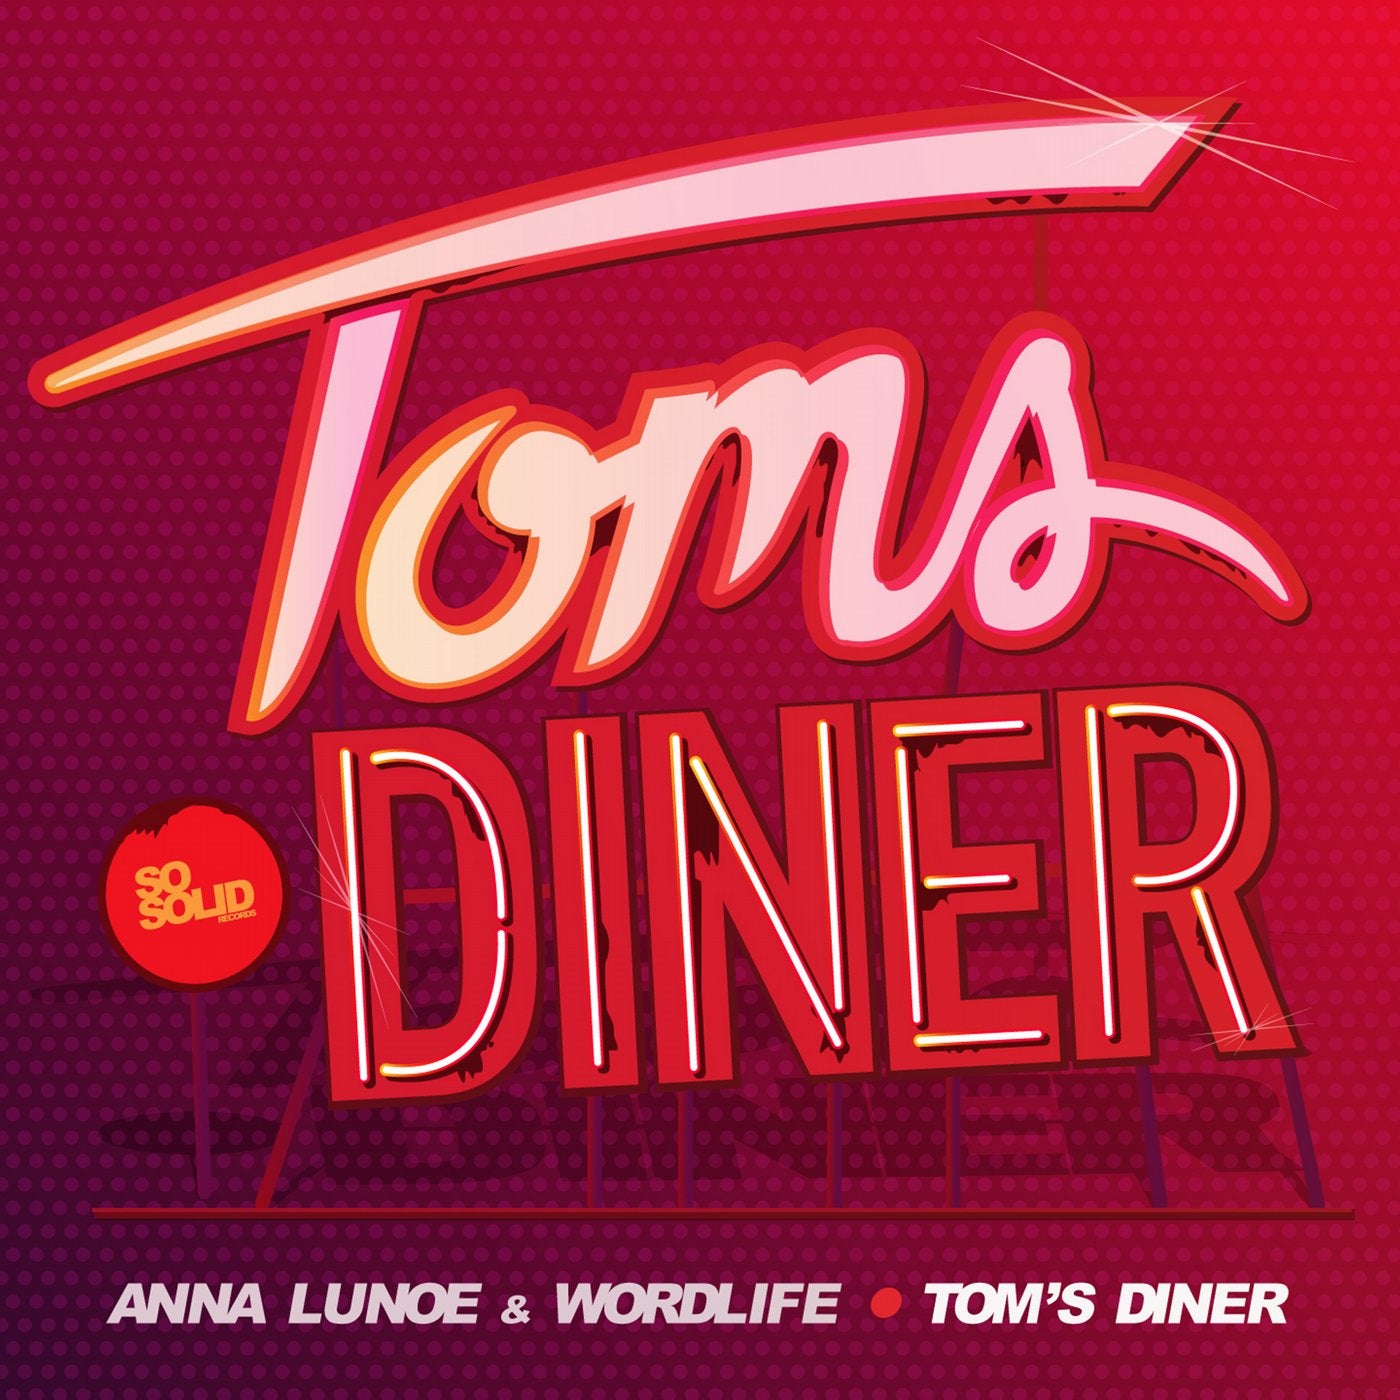 Toms Diner